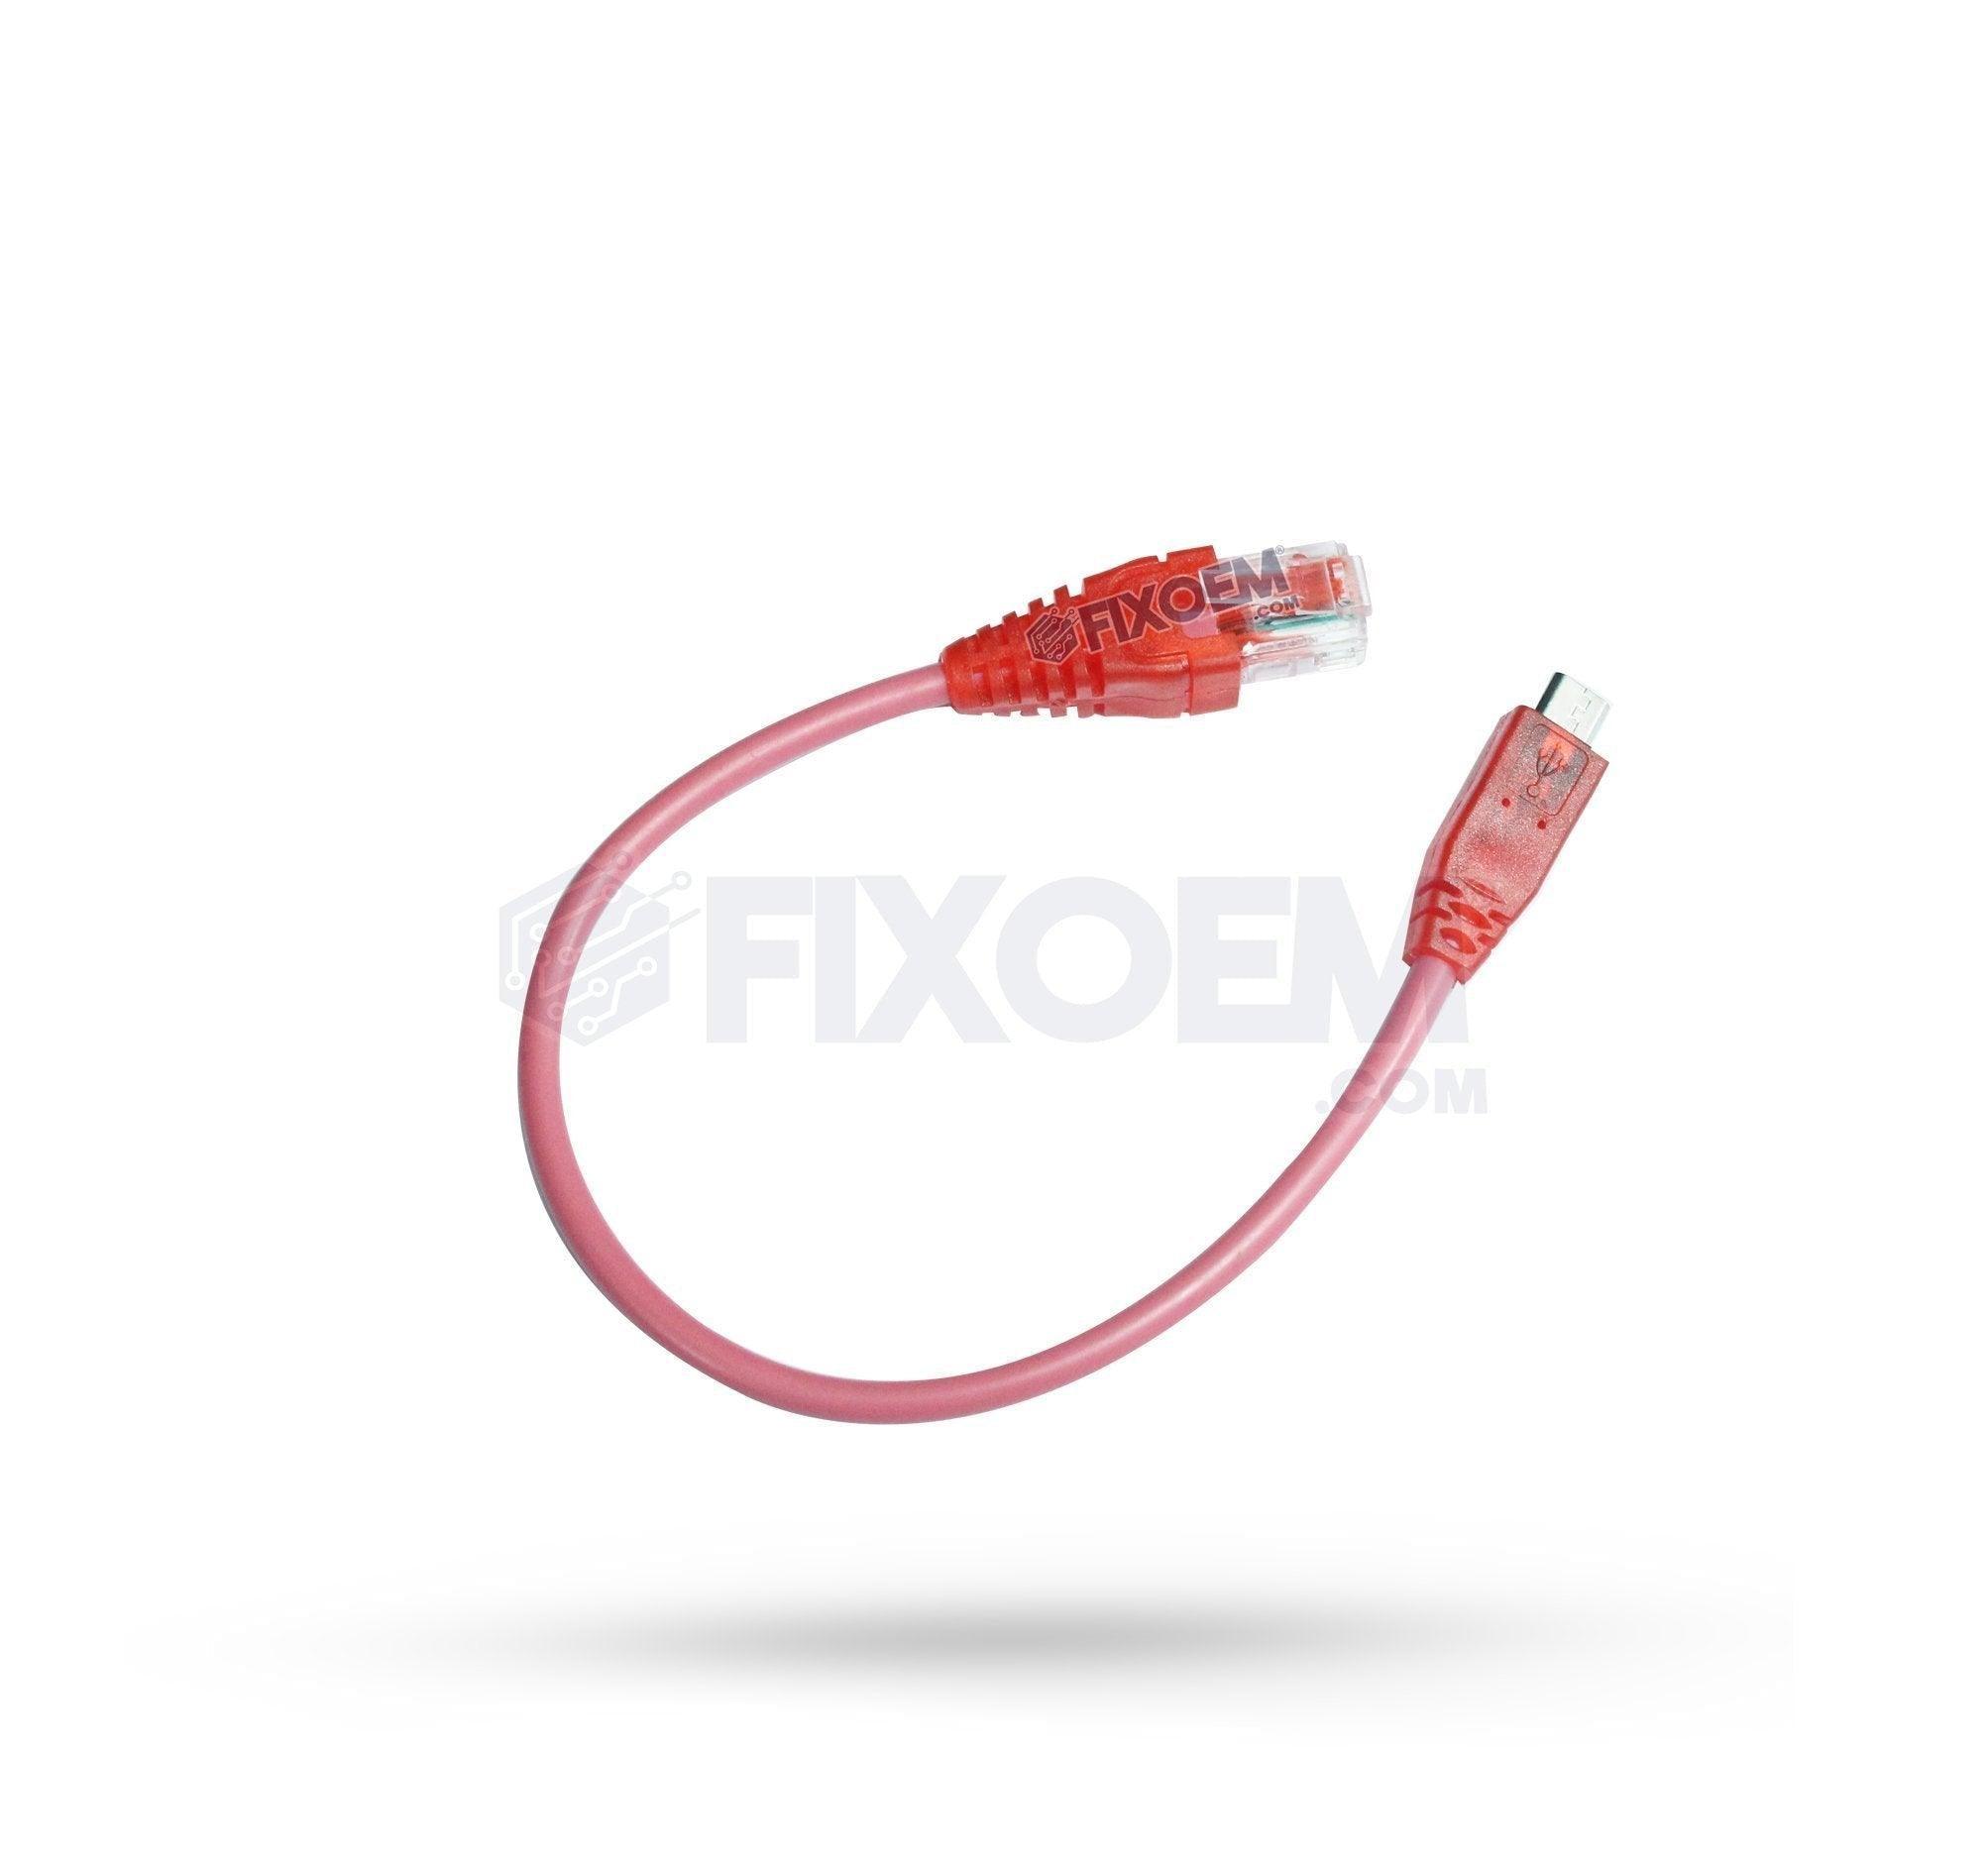 Cable Repuesto para Cajas liberación NCK / Z3X |+2,000 reseñas 4.8/5 ⭐